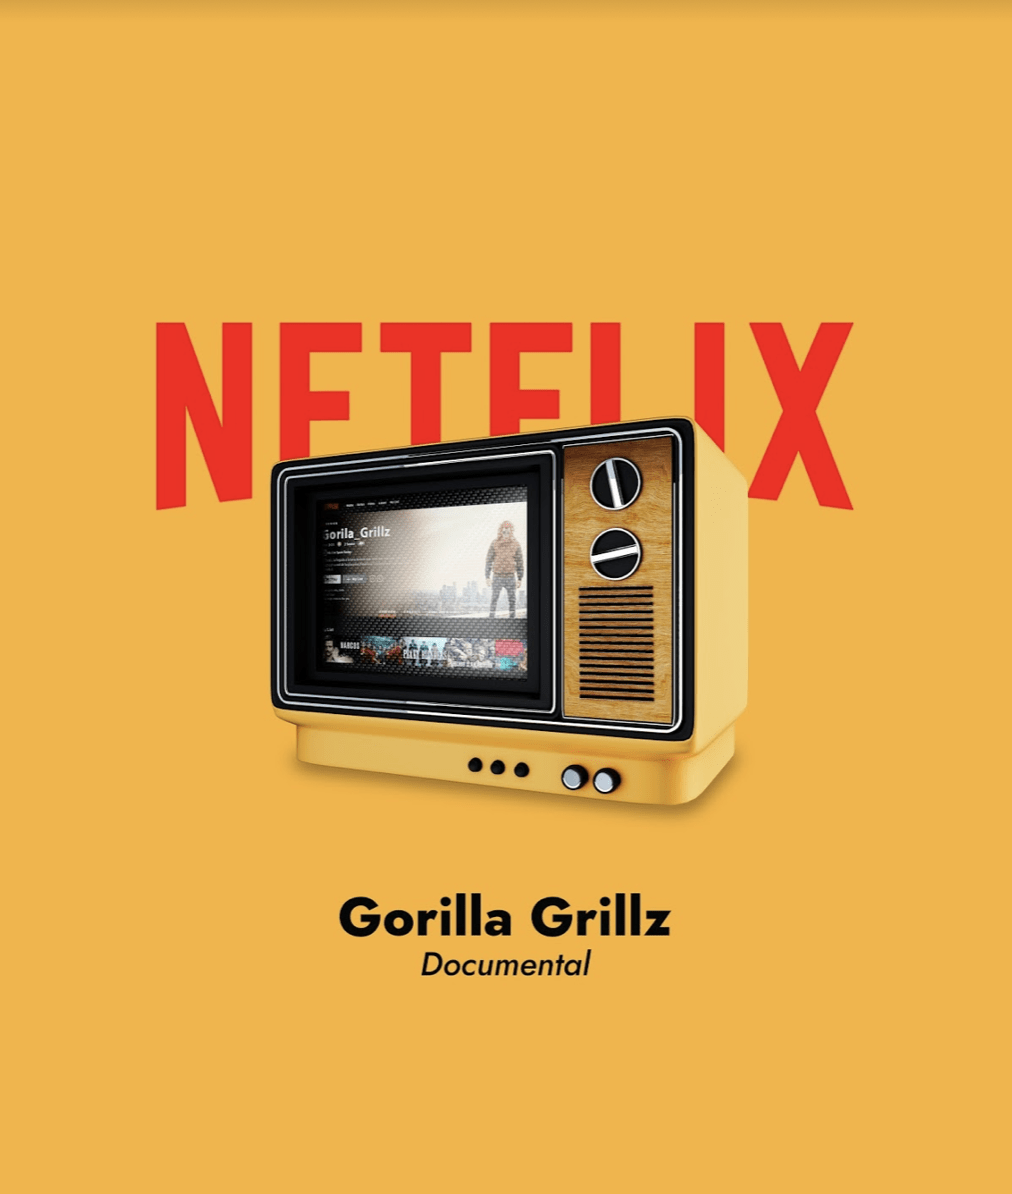 gorilla Grillz nuevo en cines